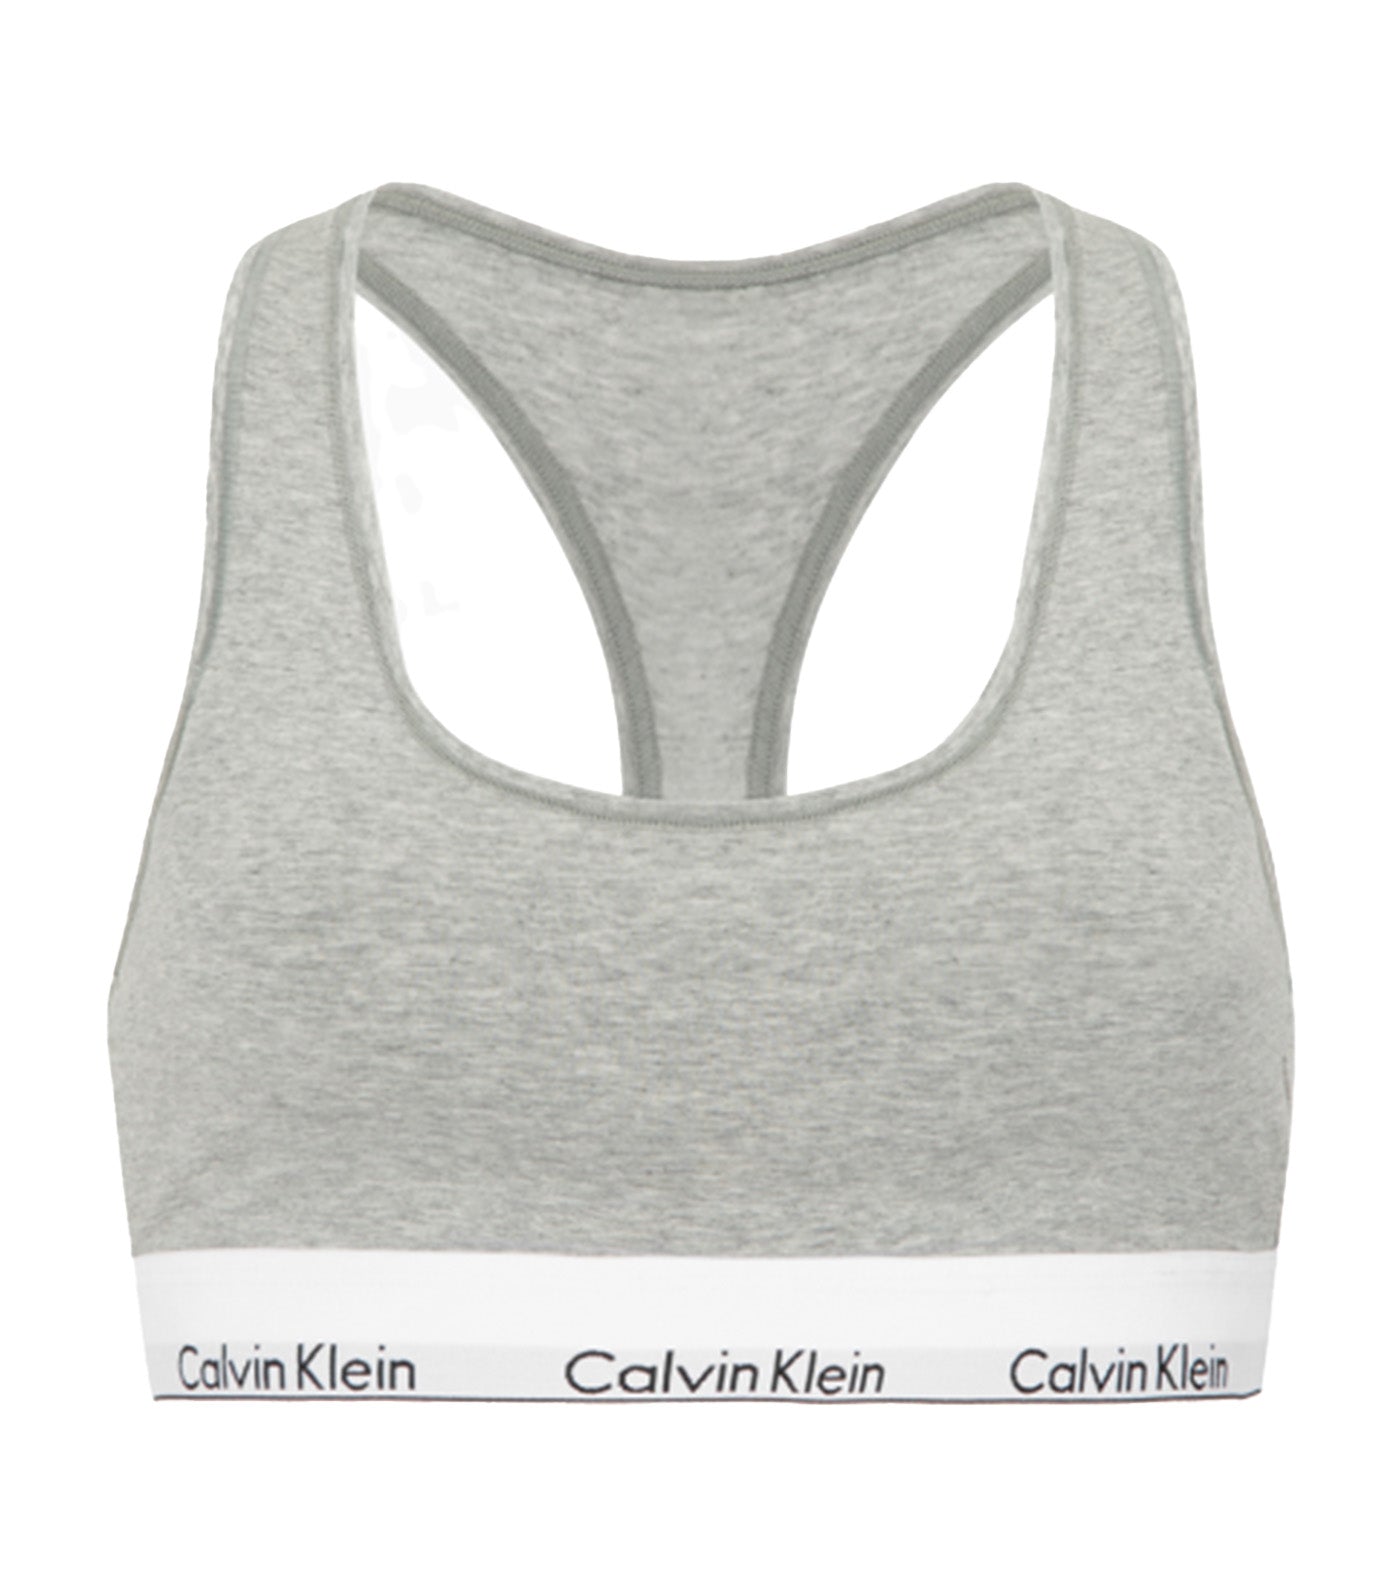 Calvin Klein Women's Modern Cotton Lightly Lined Bralette, Black